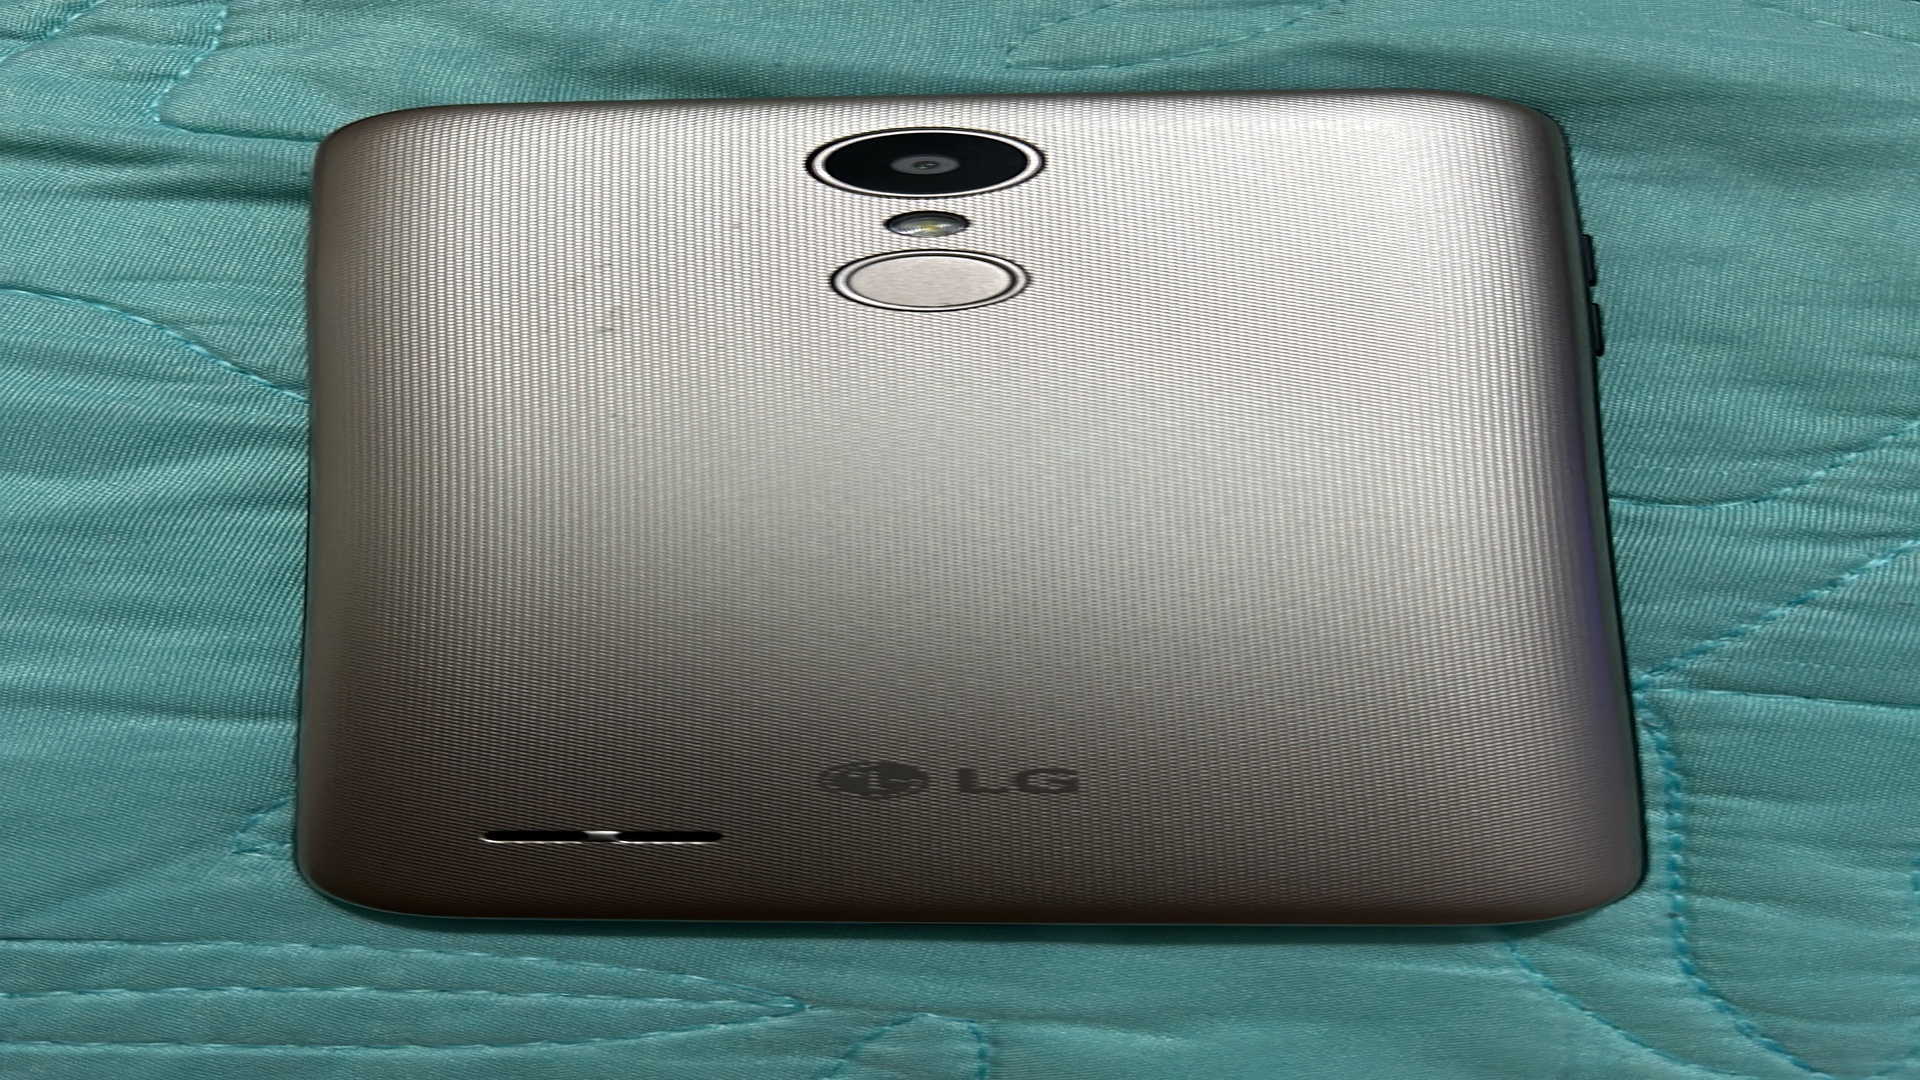 celulares y tabletas - LG SP 200 16 Gb solo interesado bloqueado de compañía 3 disponible como nuevoo
 4